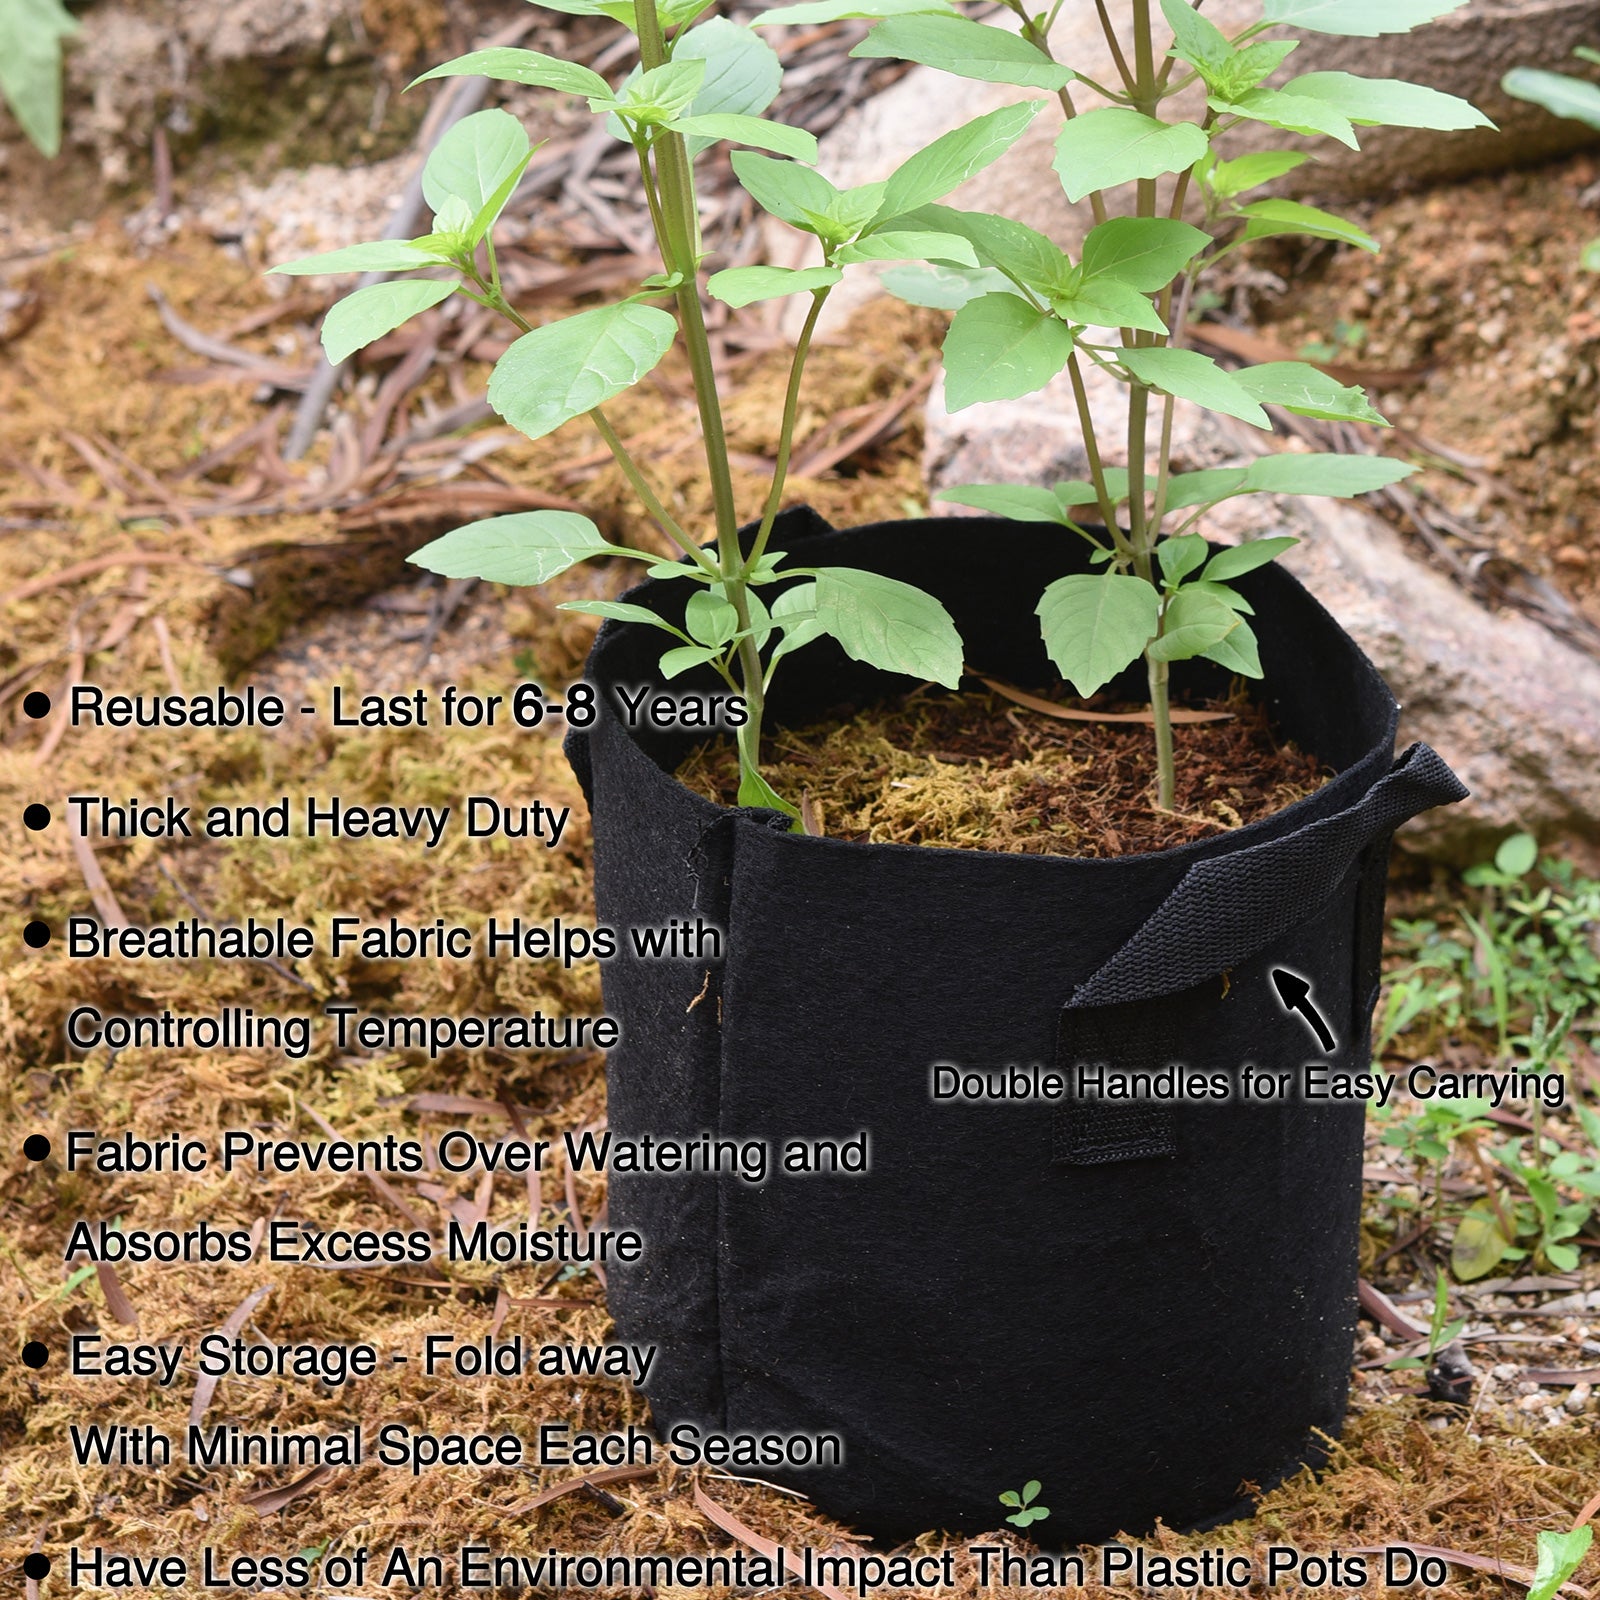 Growing Bags Reusable Potato Planter Bag Vegetable Grow Sack With Handles